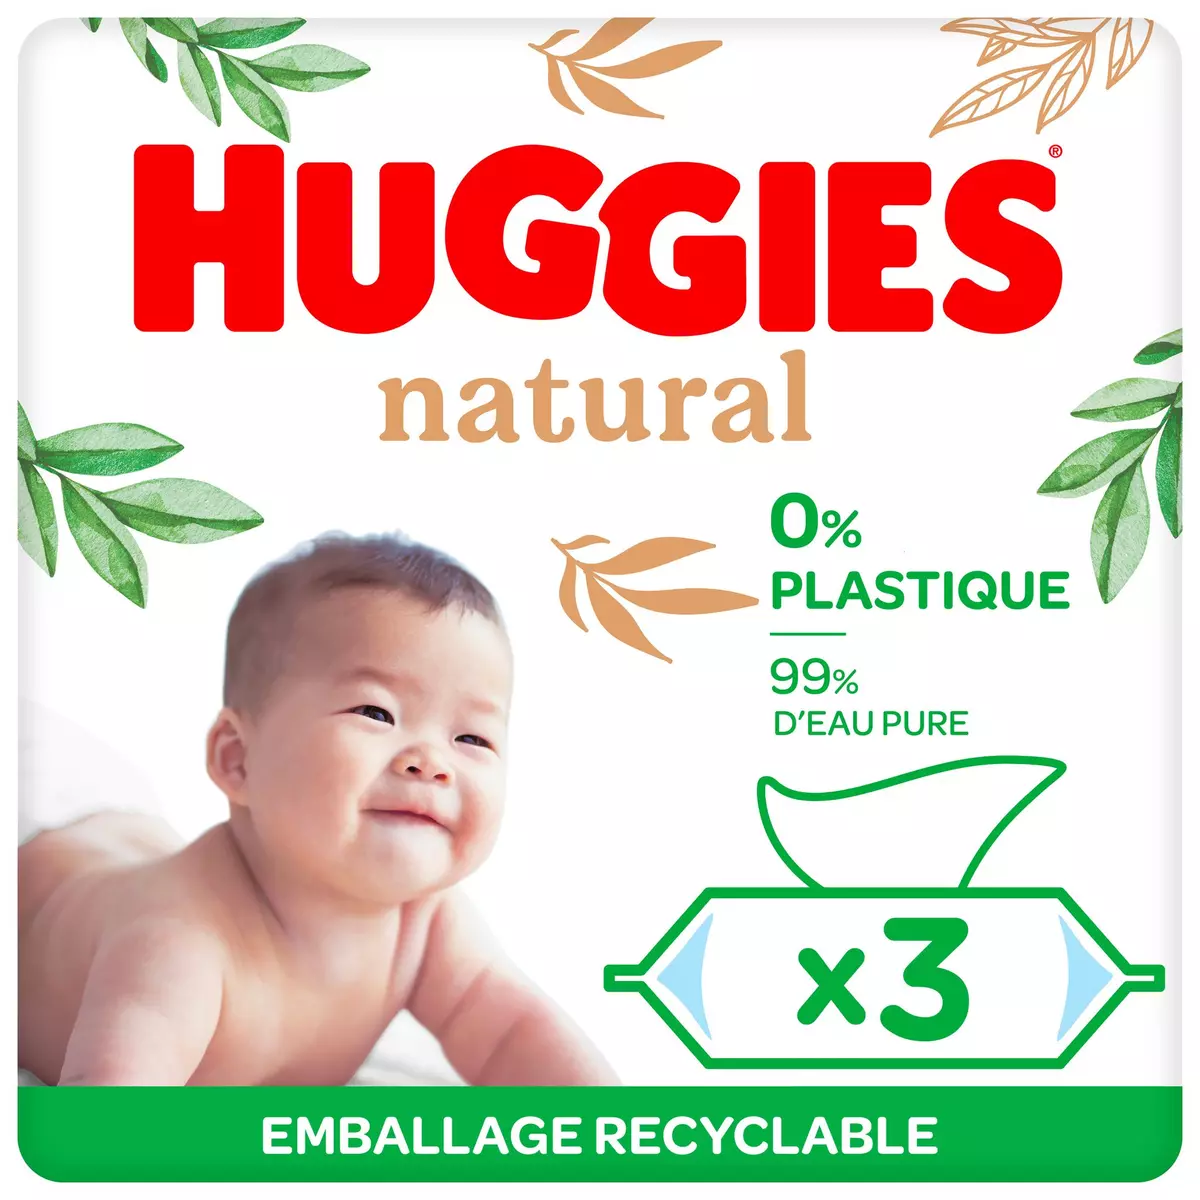 HUGGIES Lingettes naturelles pour bébé 3x48 lingettes pas cher 